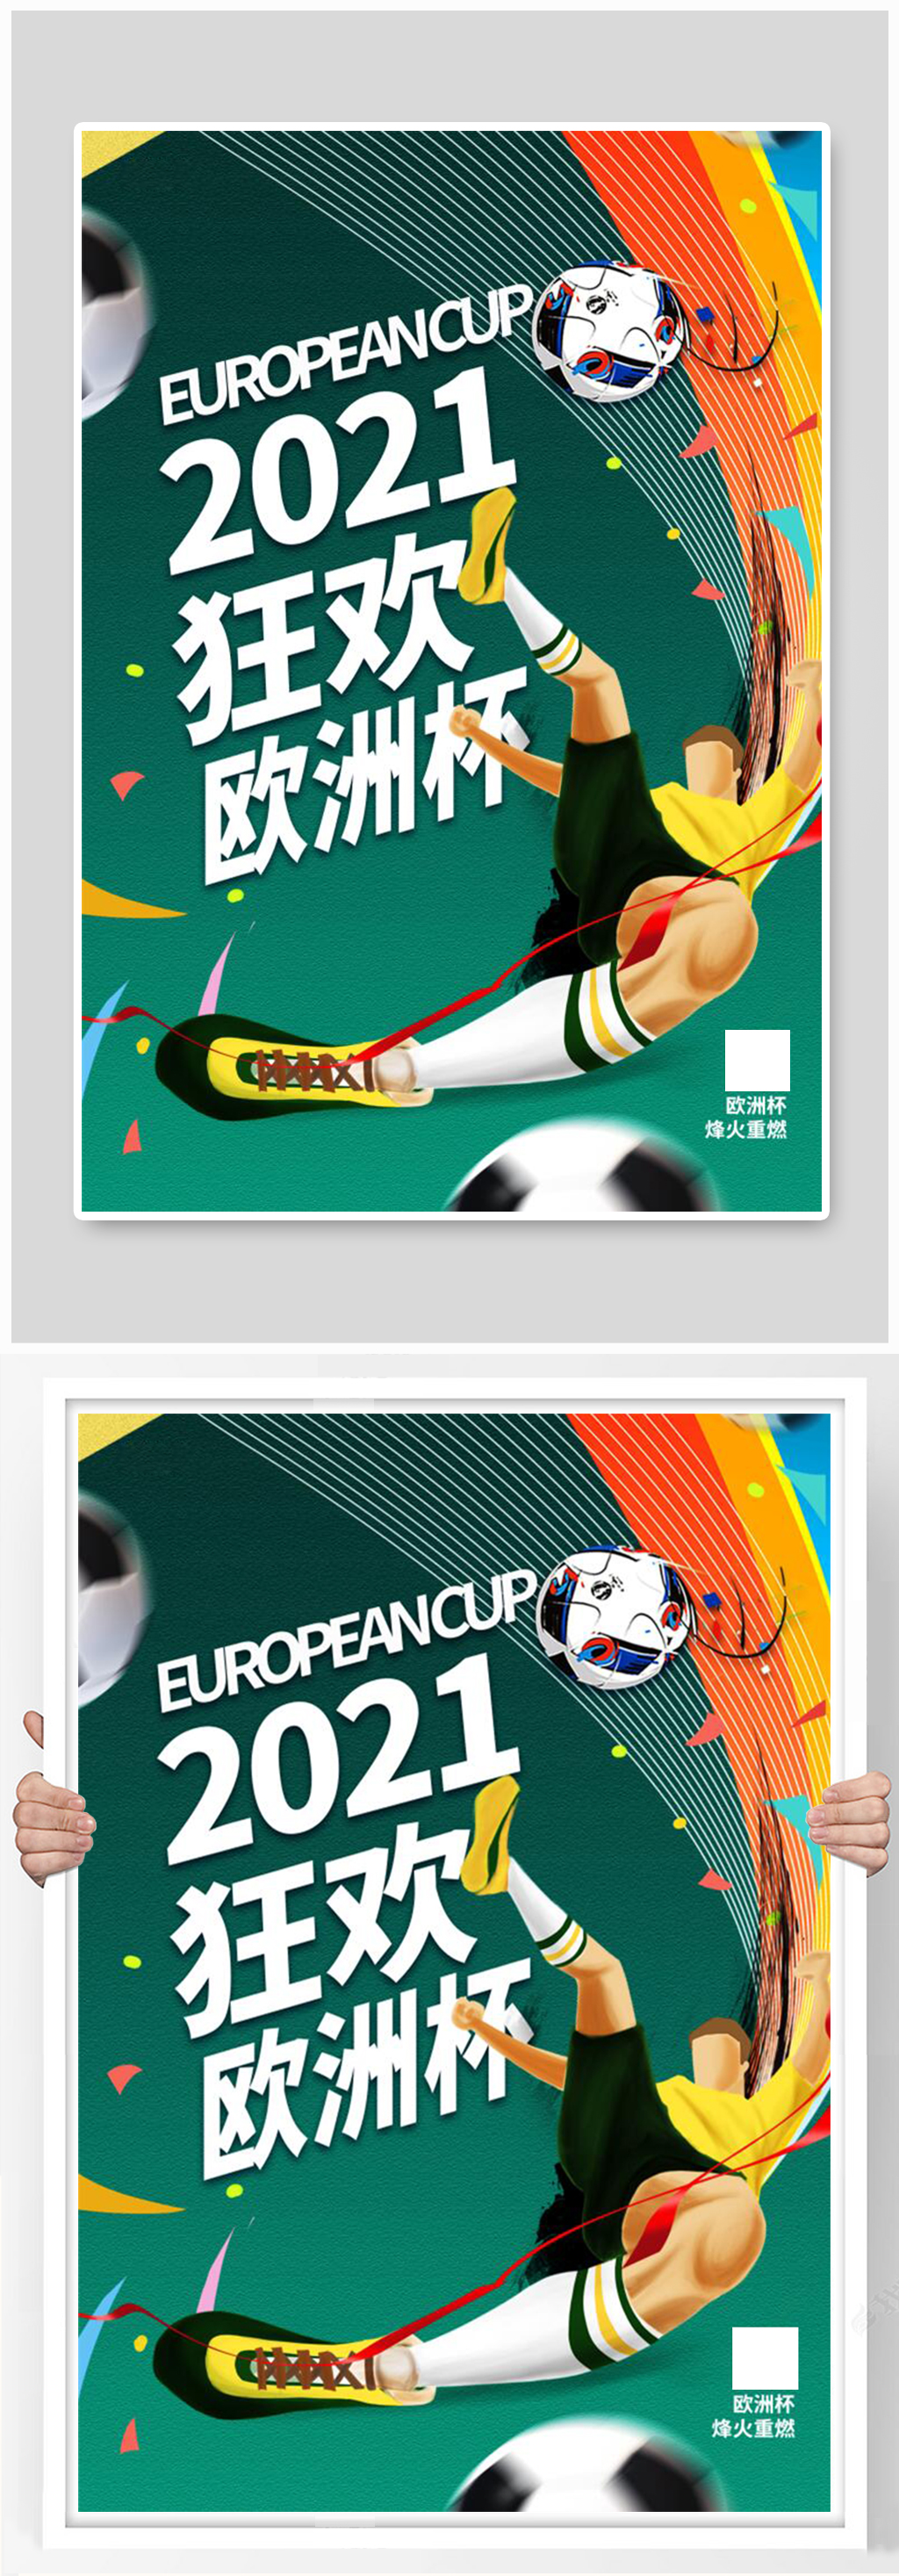 立即下载2021欧洲杯竞猜活动海报立即下载